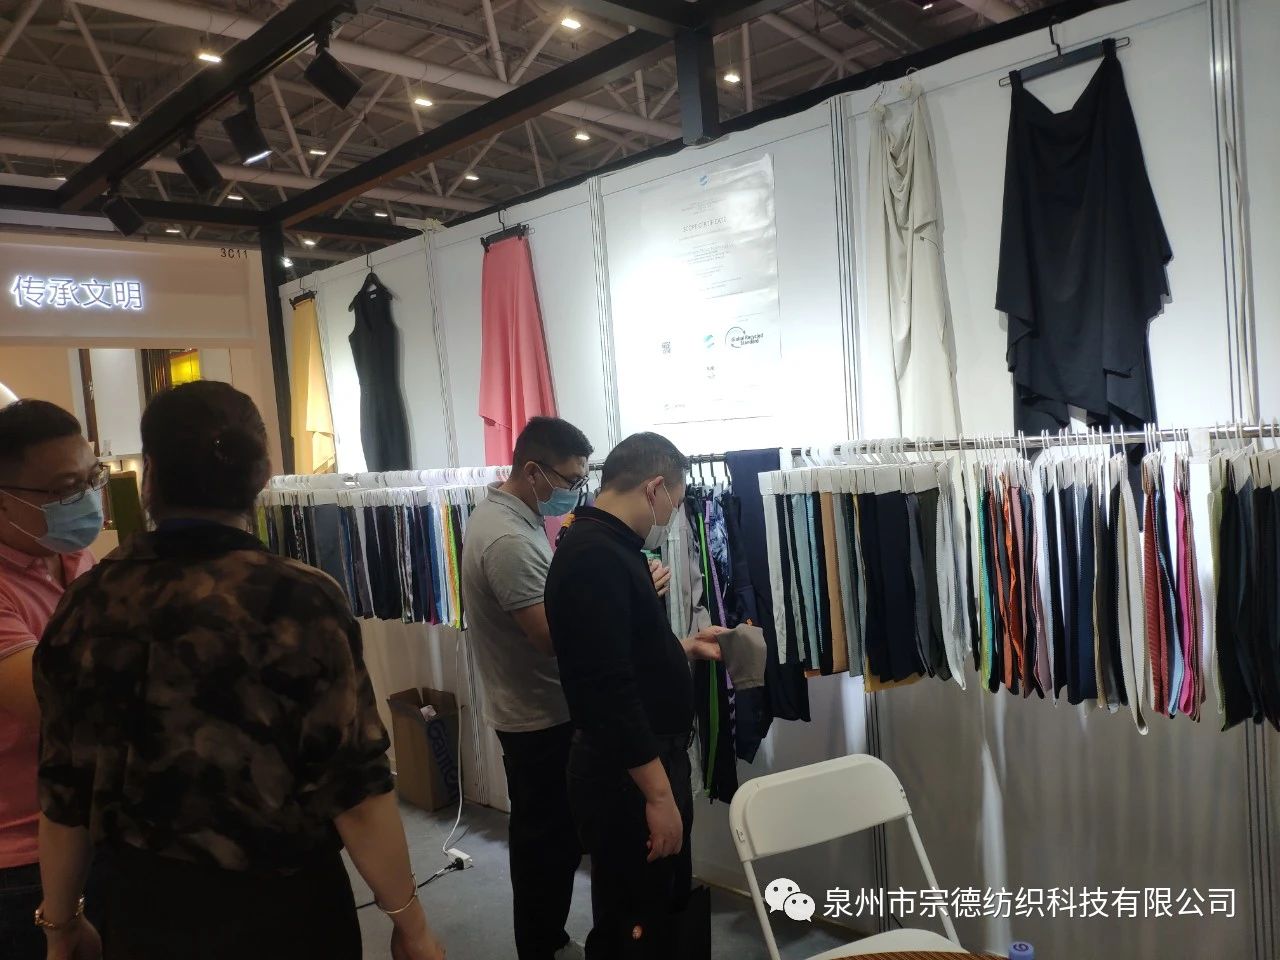 宗德紡織參加 第25屆深圳國際服裝供應鏈博覽會